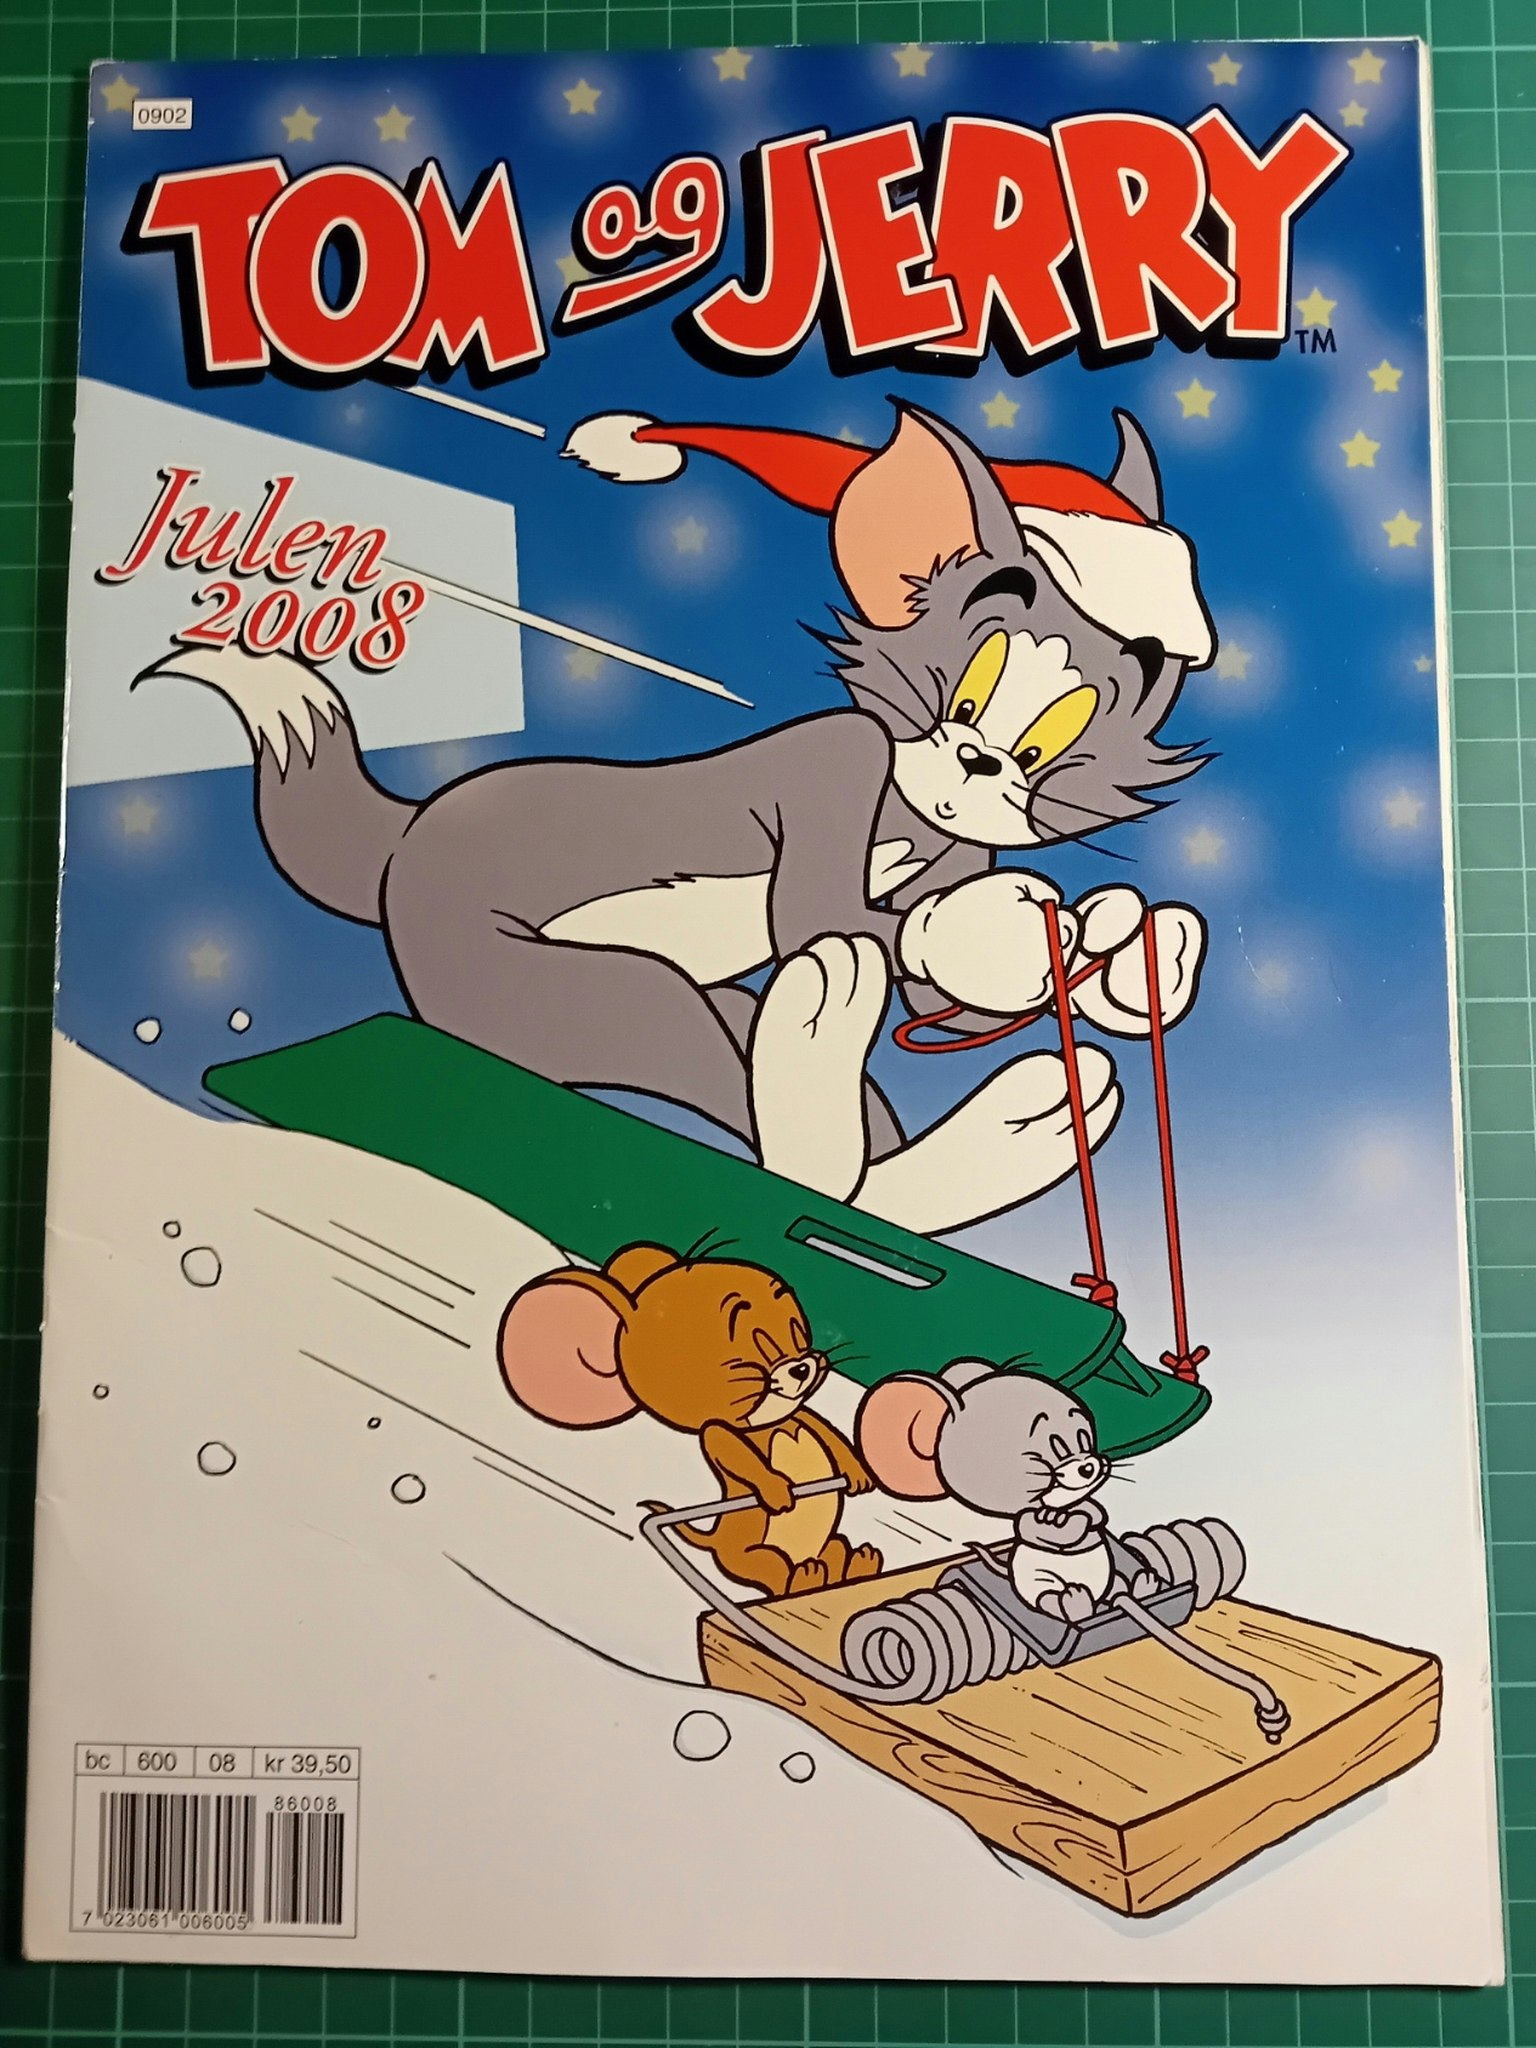 Tom & Jerry julen 2008